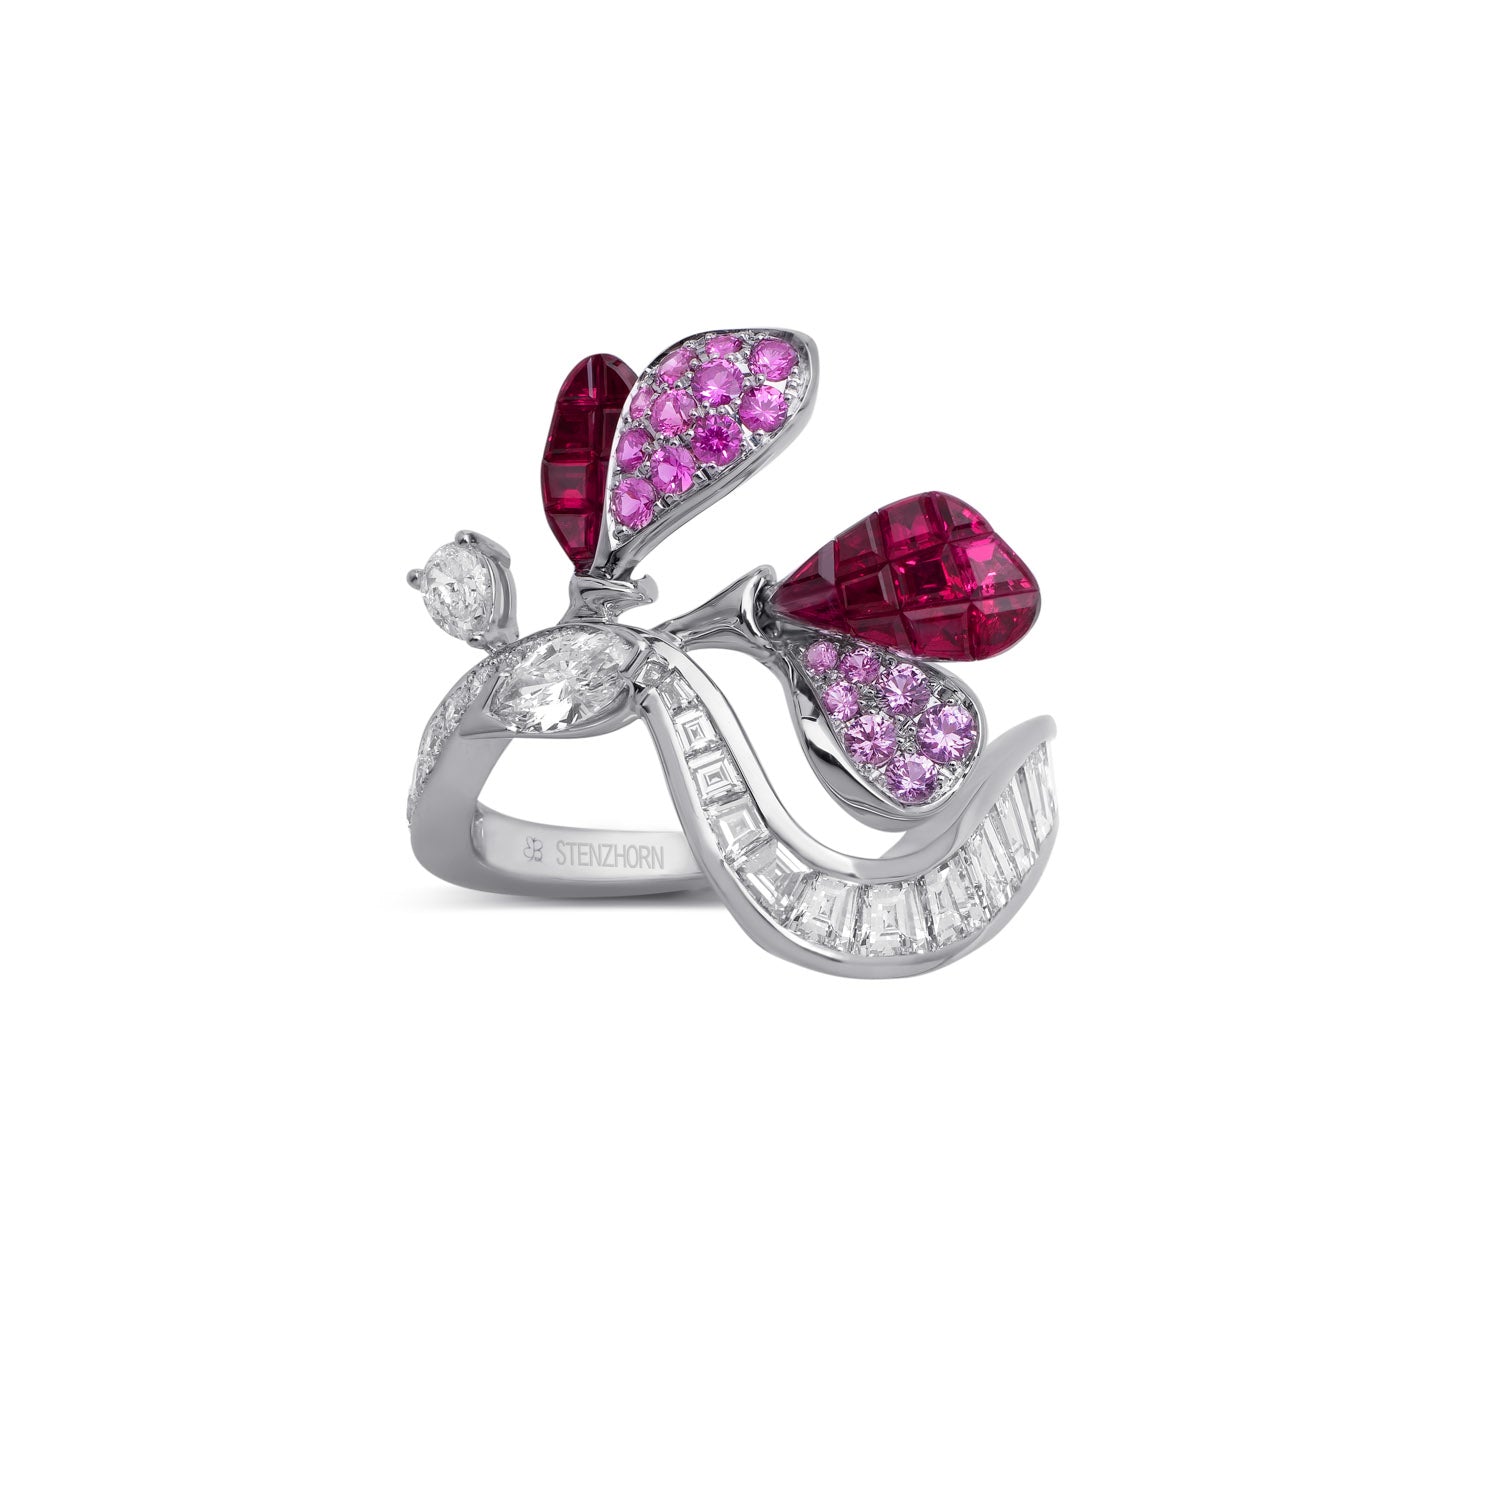 À FLEUR DE PARIS Ruby and Pink Sapphire Ring